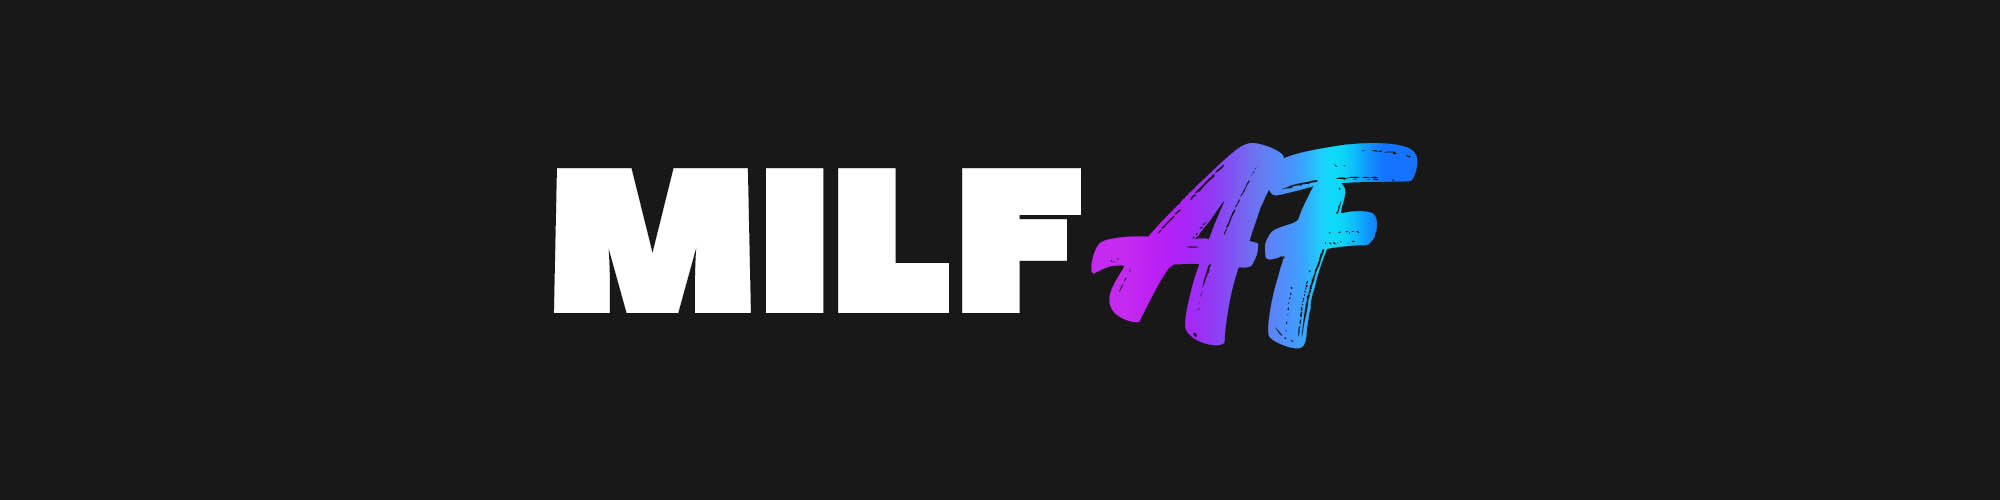 milfaf.com premium